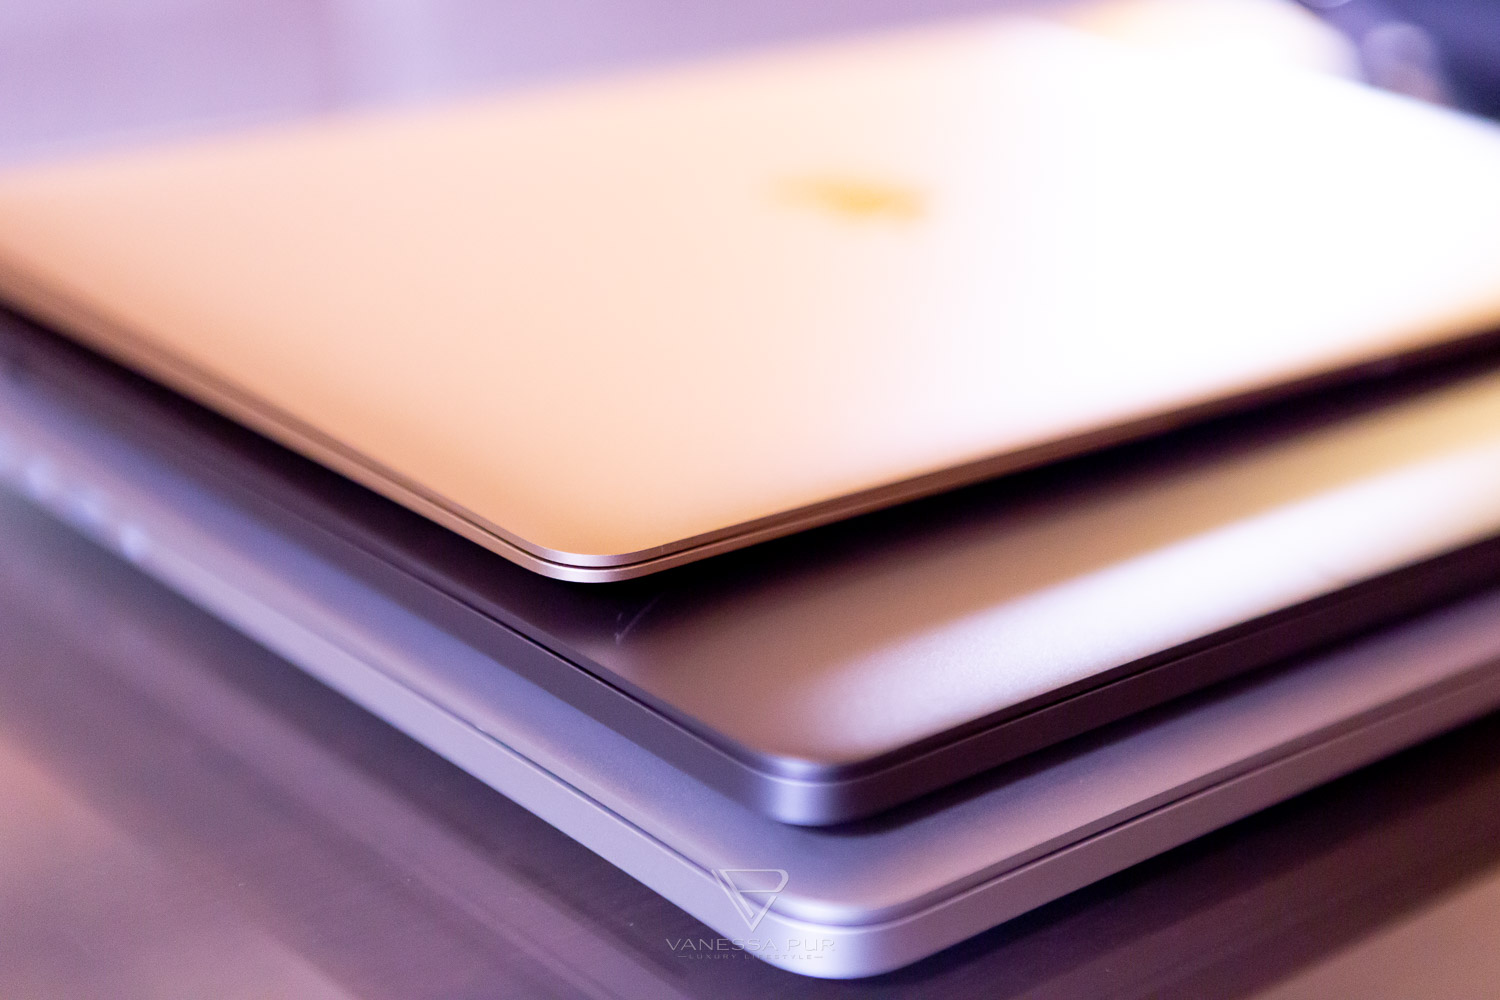 MacBook kaufen oder MacBook Air kaufen - Entscheidungshilfe - Apple MacBook Laptop - Gold, Rosegold, Silber, Spacegrau - Bewertung Notebook - 12Zoll - Technikblog, Lifestyleblogger